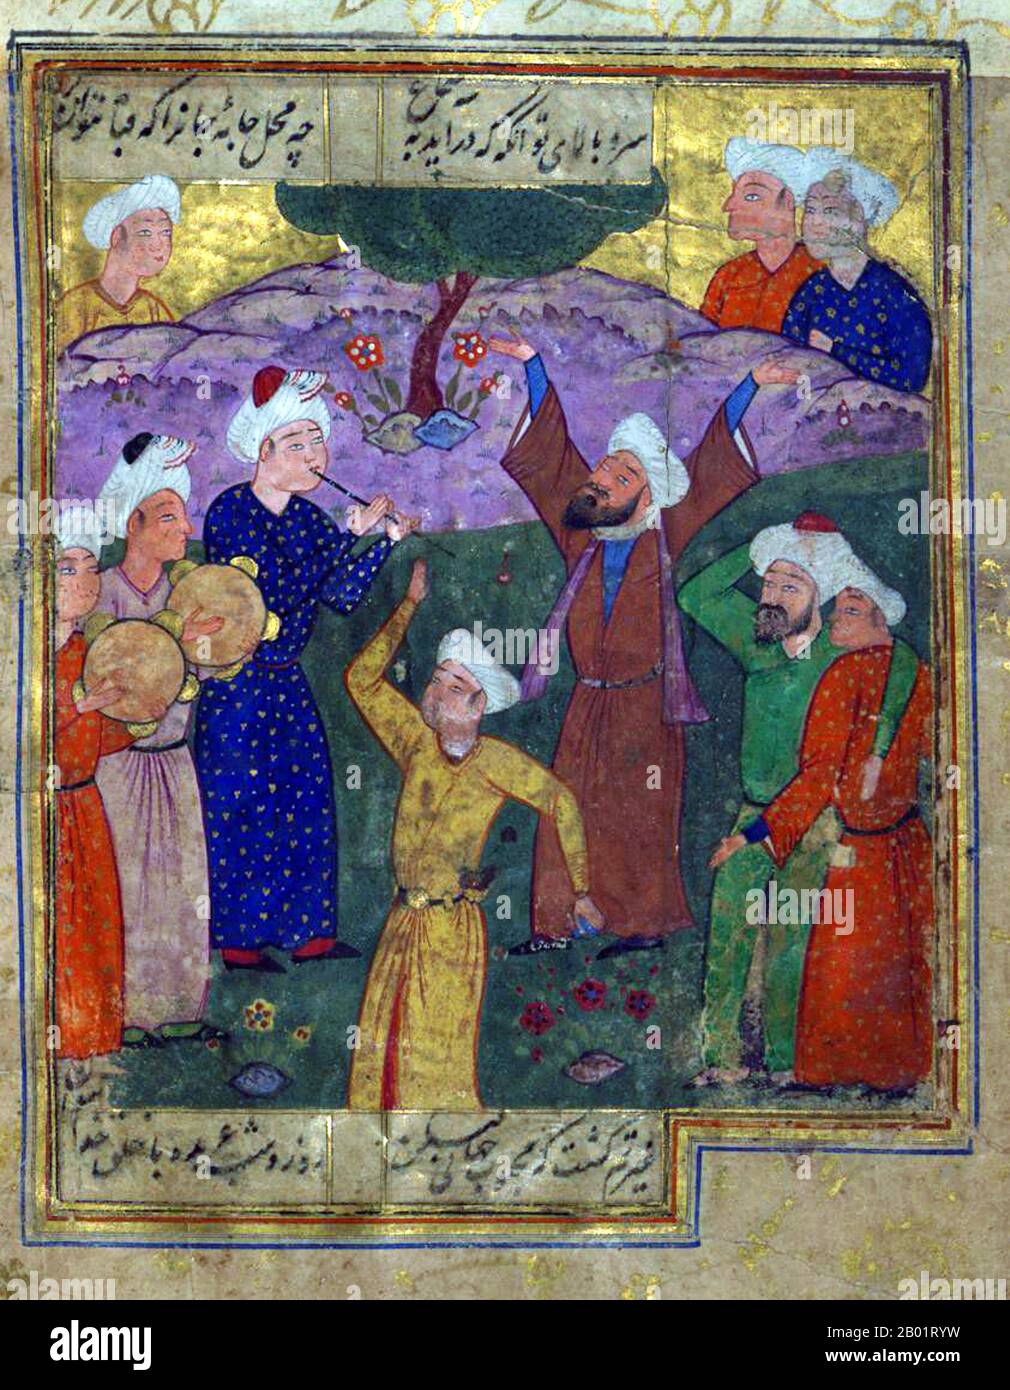 Iran/Persia: I sufi ballano alla musica. Folio da un divan di Hafez Shirazi (c. 1325-1390), XVI secolo. Khwāja Shamsu d-Dīn Muhammad Hāfez-e Shīrāzī, conosciuto con lo pseudonimo di Hāfez, è stato un poeta persiano. Le sue opere raccolte composte da serie di poesie persiane (Divan) si trovano nelle case della maggior parte dei parlanti persiani in Iran e Afghanistan, così come altrove nel mondo, che imparano le sue poesie a memoria e le usano come proverbi e detti fino ad oggi. La sua vita e le sue poesie sono state oggetto di molte analisi, commenti e interpretazioni. Foto Stock